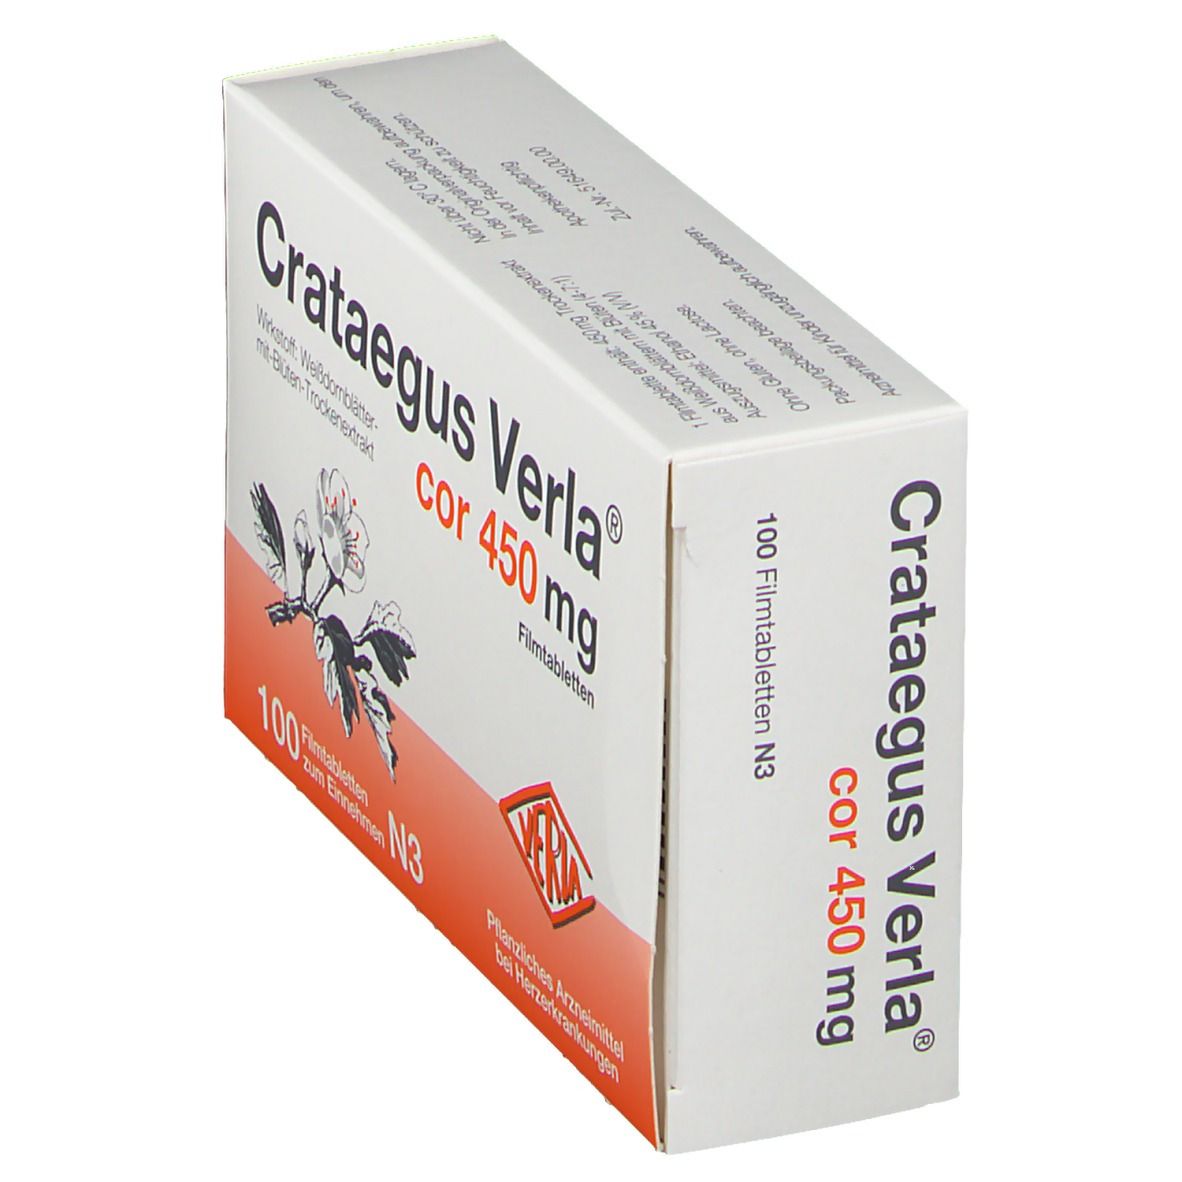 Crataegus Verla® Cor 450 mg Filmtabletten